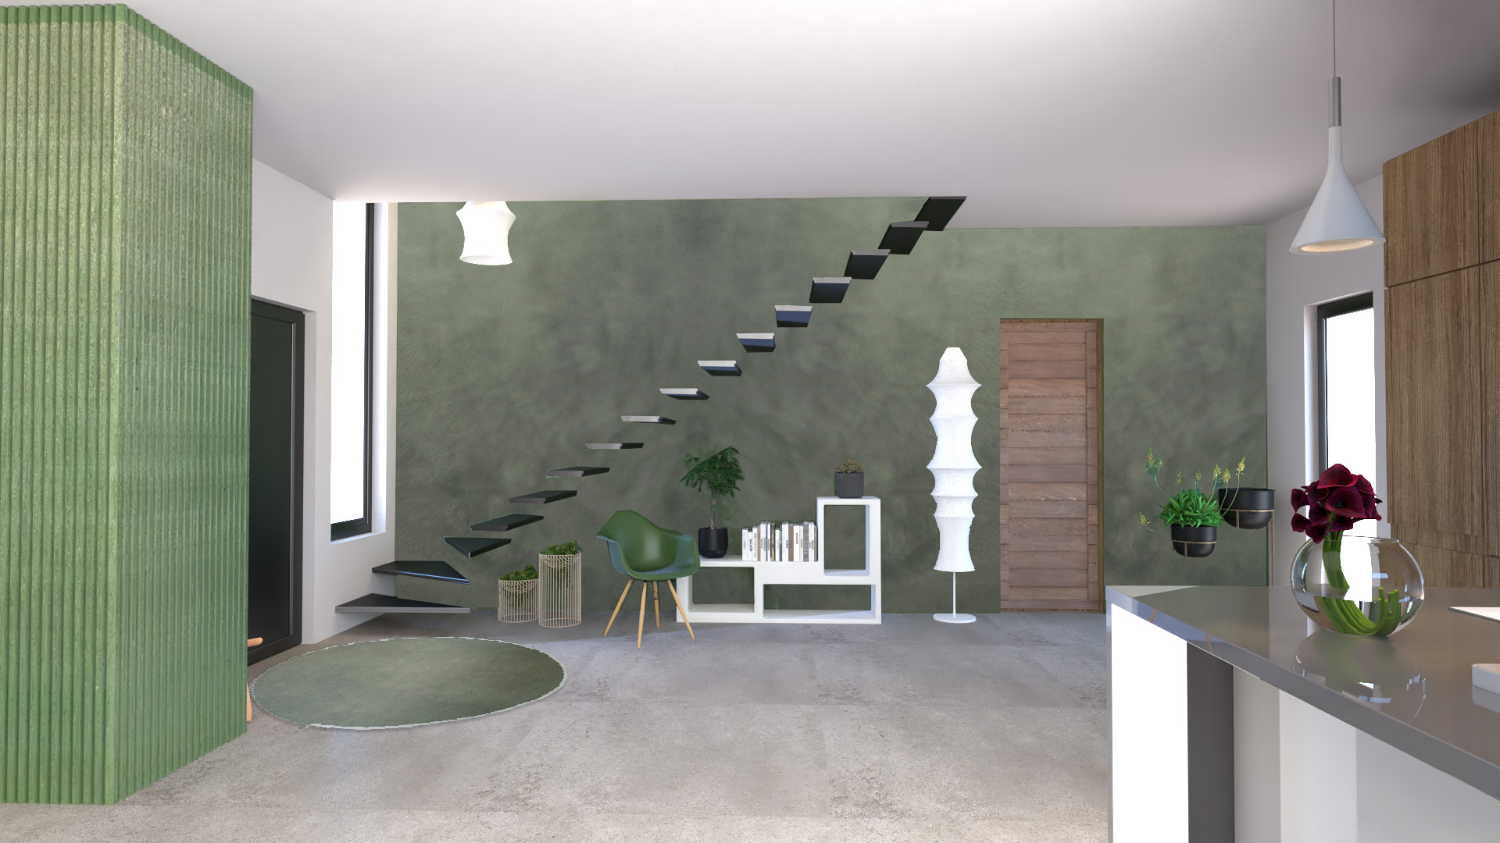 Vue photoréaliste de l'entrée et du mur d'escalier recouvert avec une finition Marmorino à la chaux ; projet réalisé par le studio Elles Interior Design.